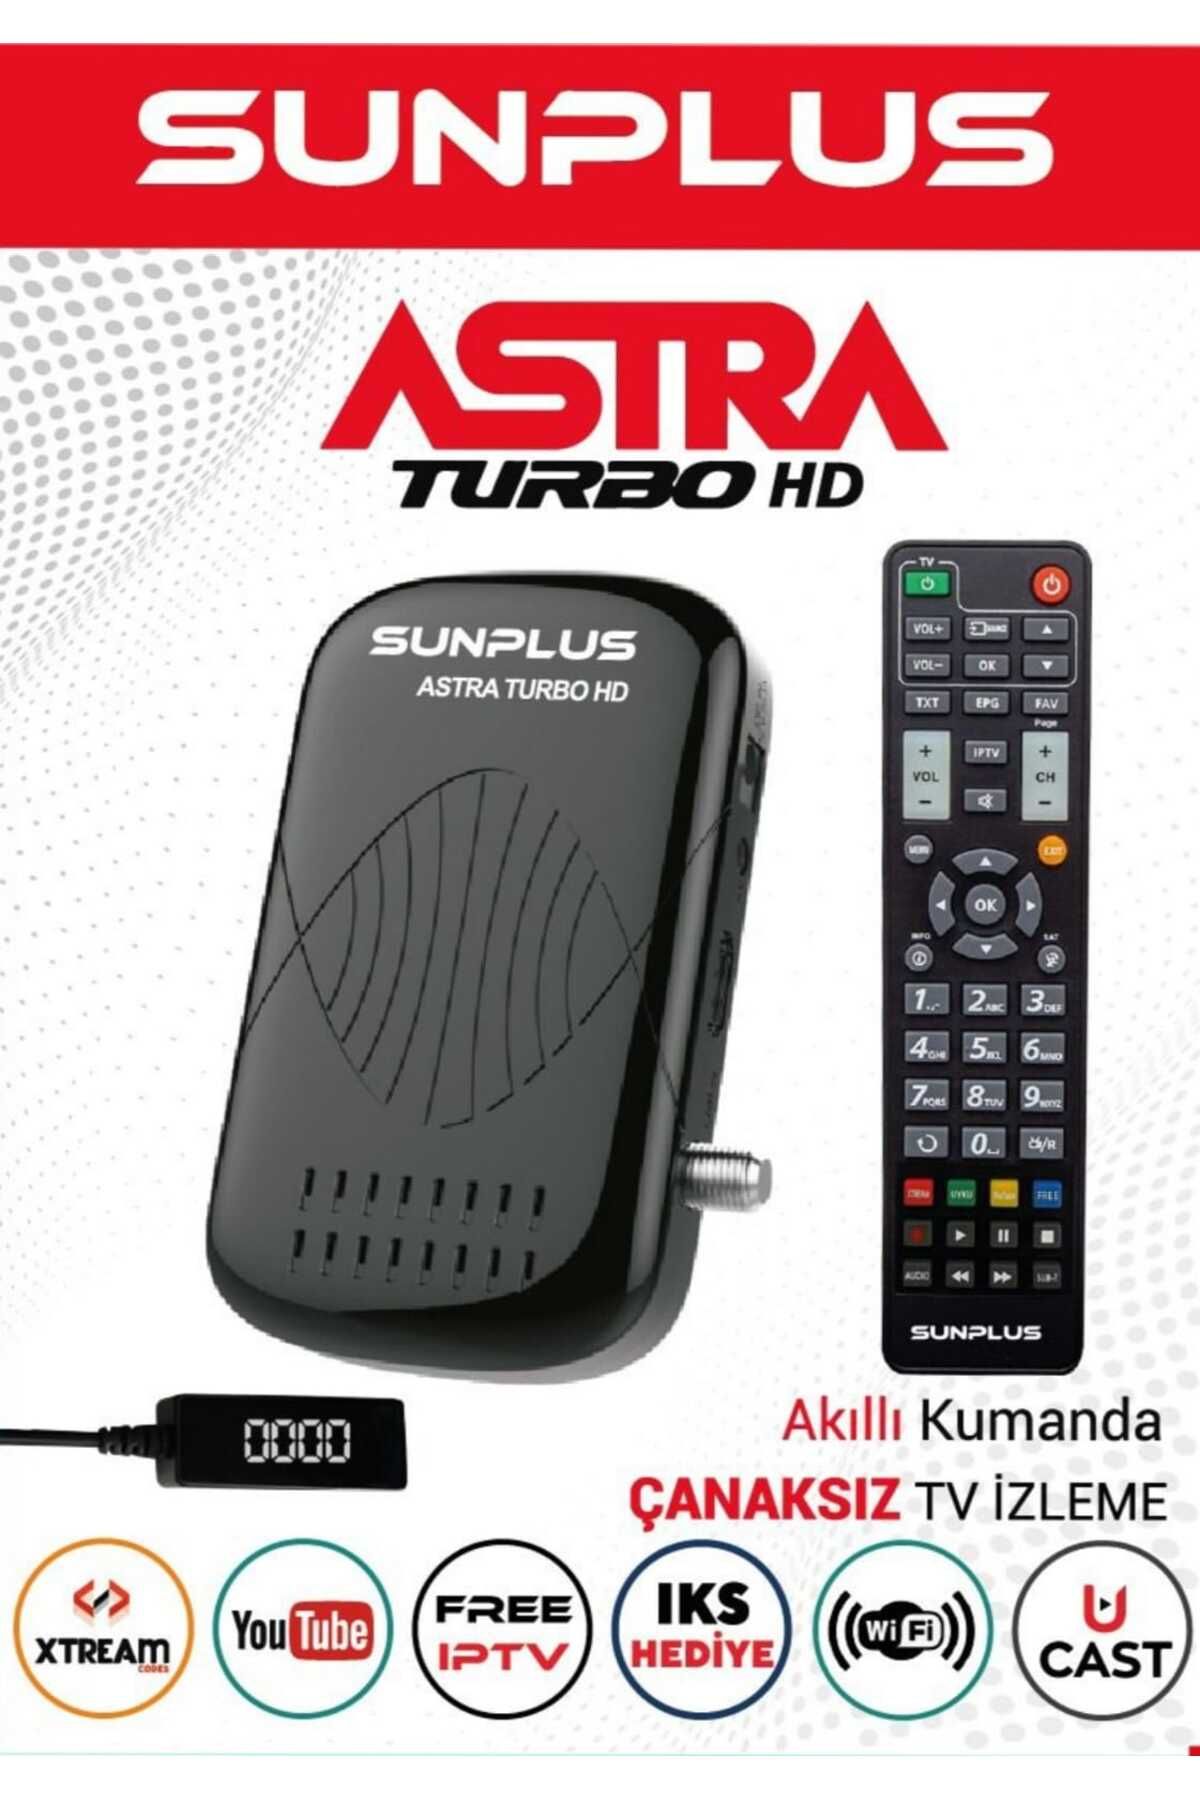 Sunplus Astra Turbo HD Çanaklı - Çanaksız İzleme IKS + 1Yıl BELGESEL HEDİYE (YENİ SERİ)